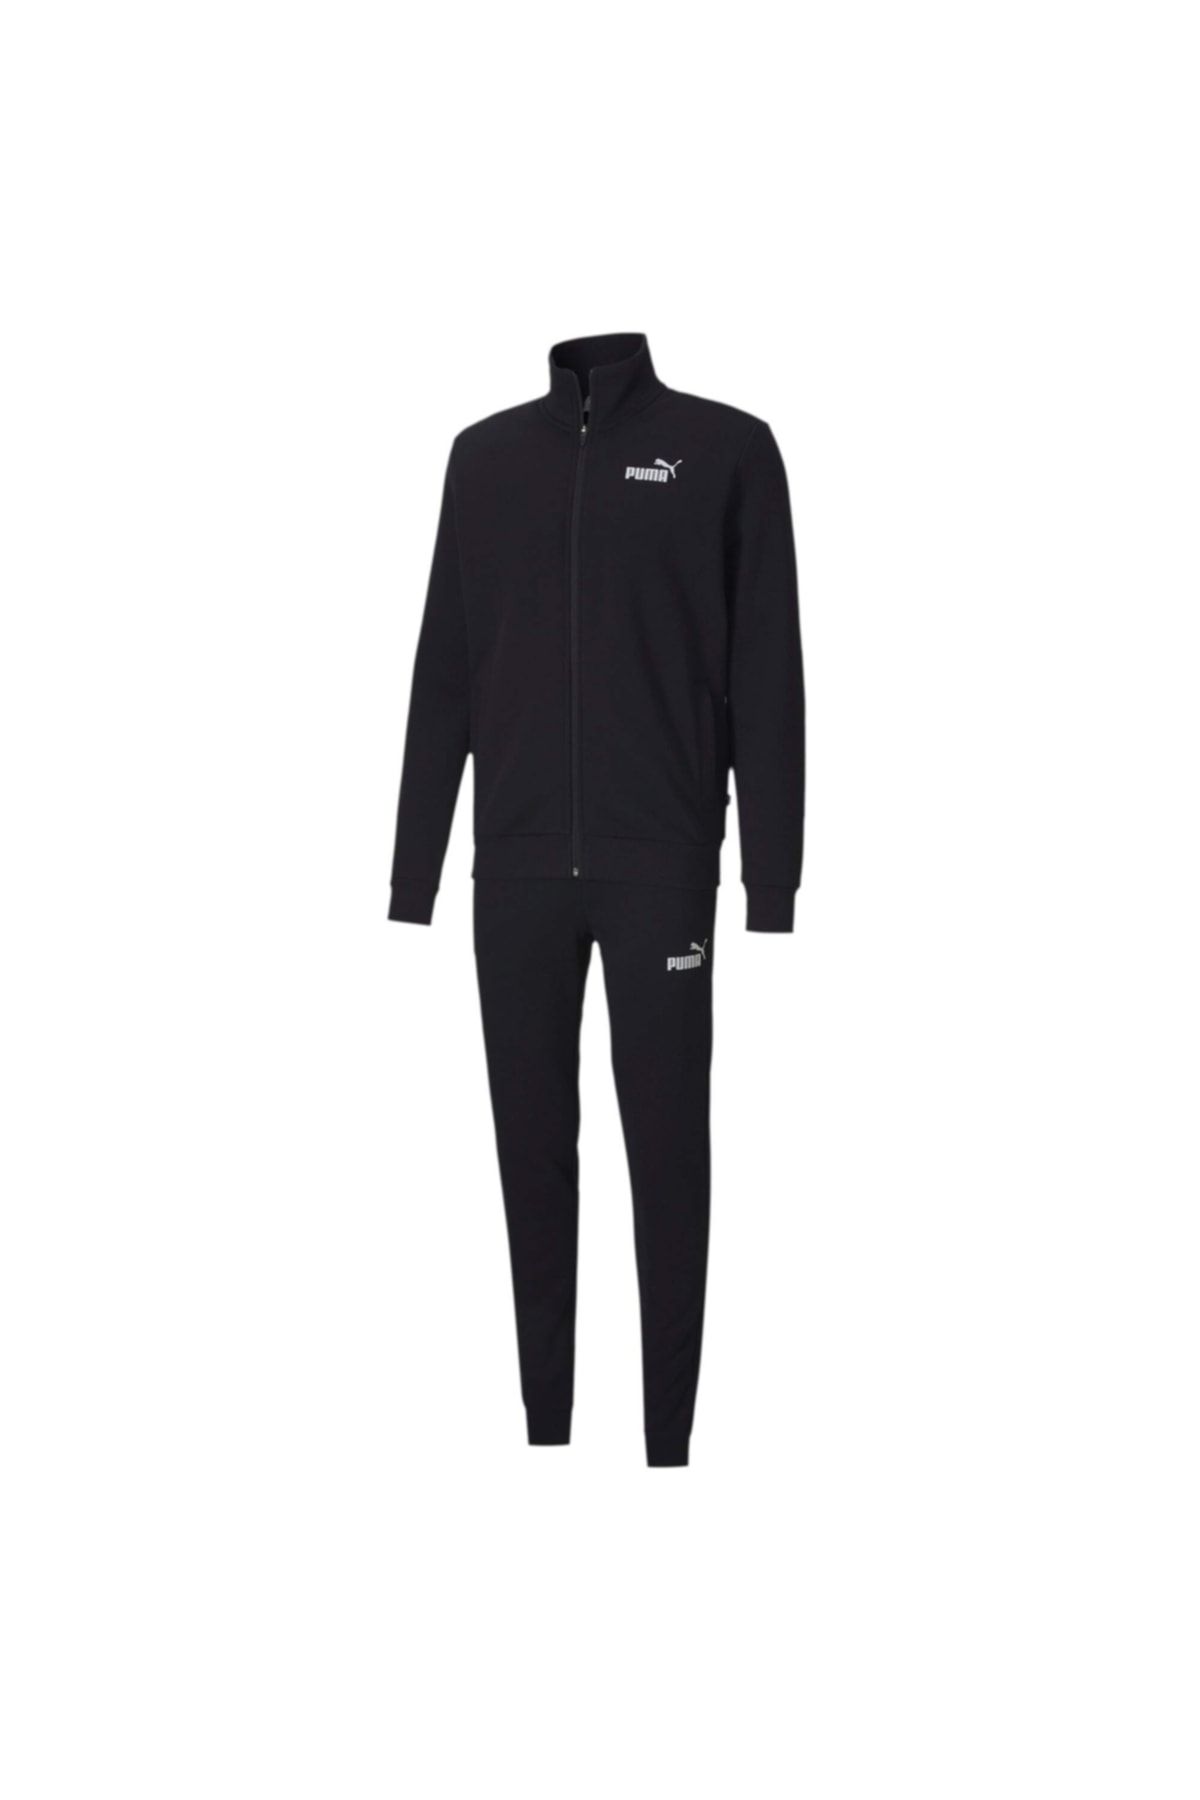 Puma Clean Sweat Suit Erkek Eşofman Takımı 583598-01